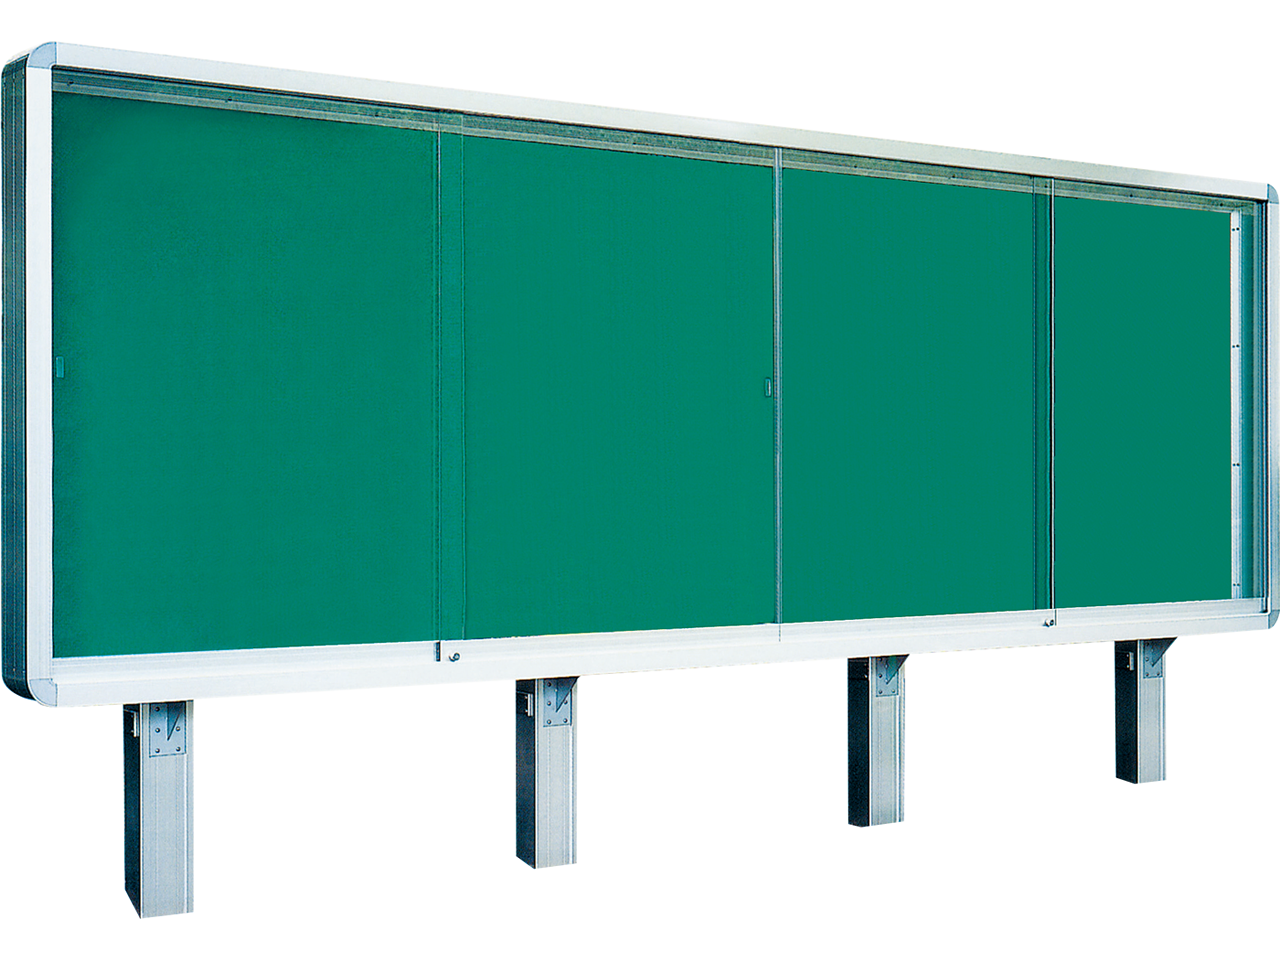 アルミ製大型野外掲示板 D150タイプ 黒板 ホワイトボード製造 販売 藤村式黒板製作所